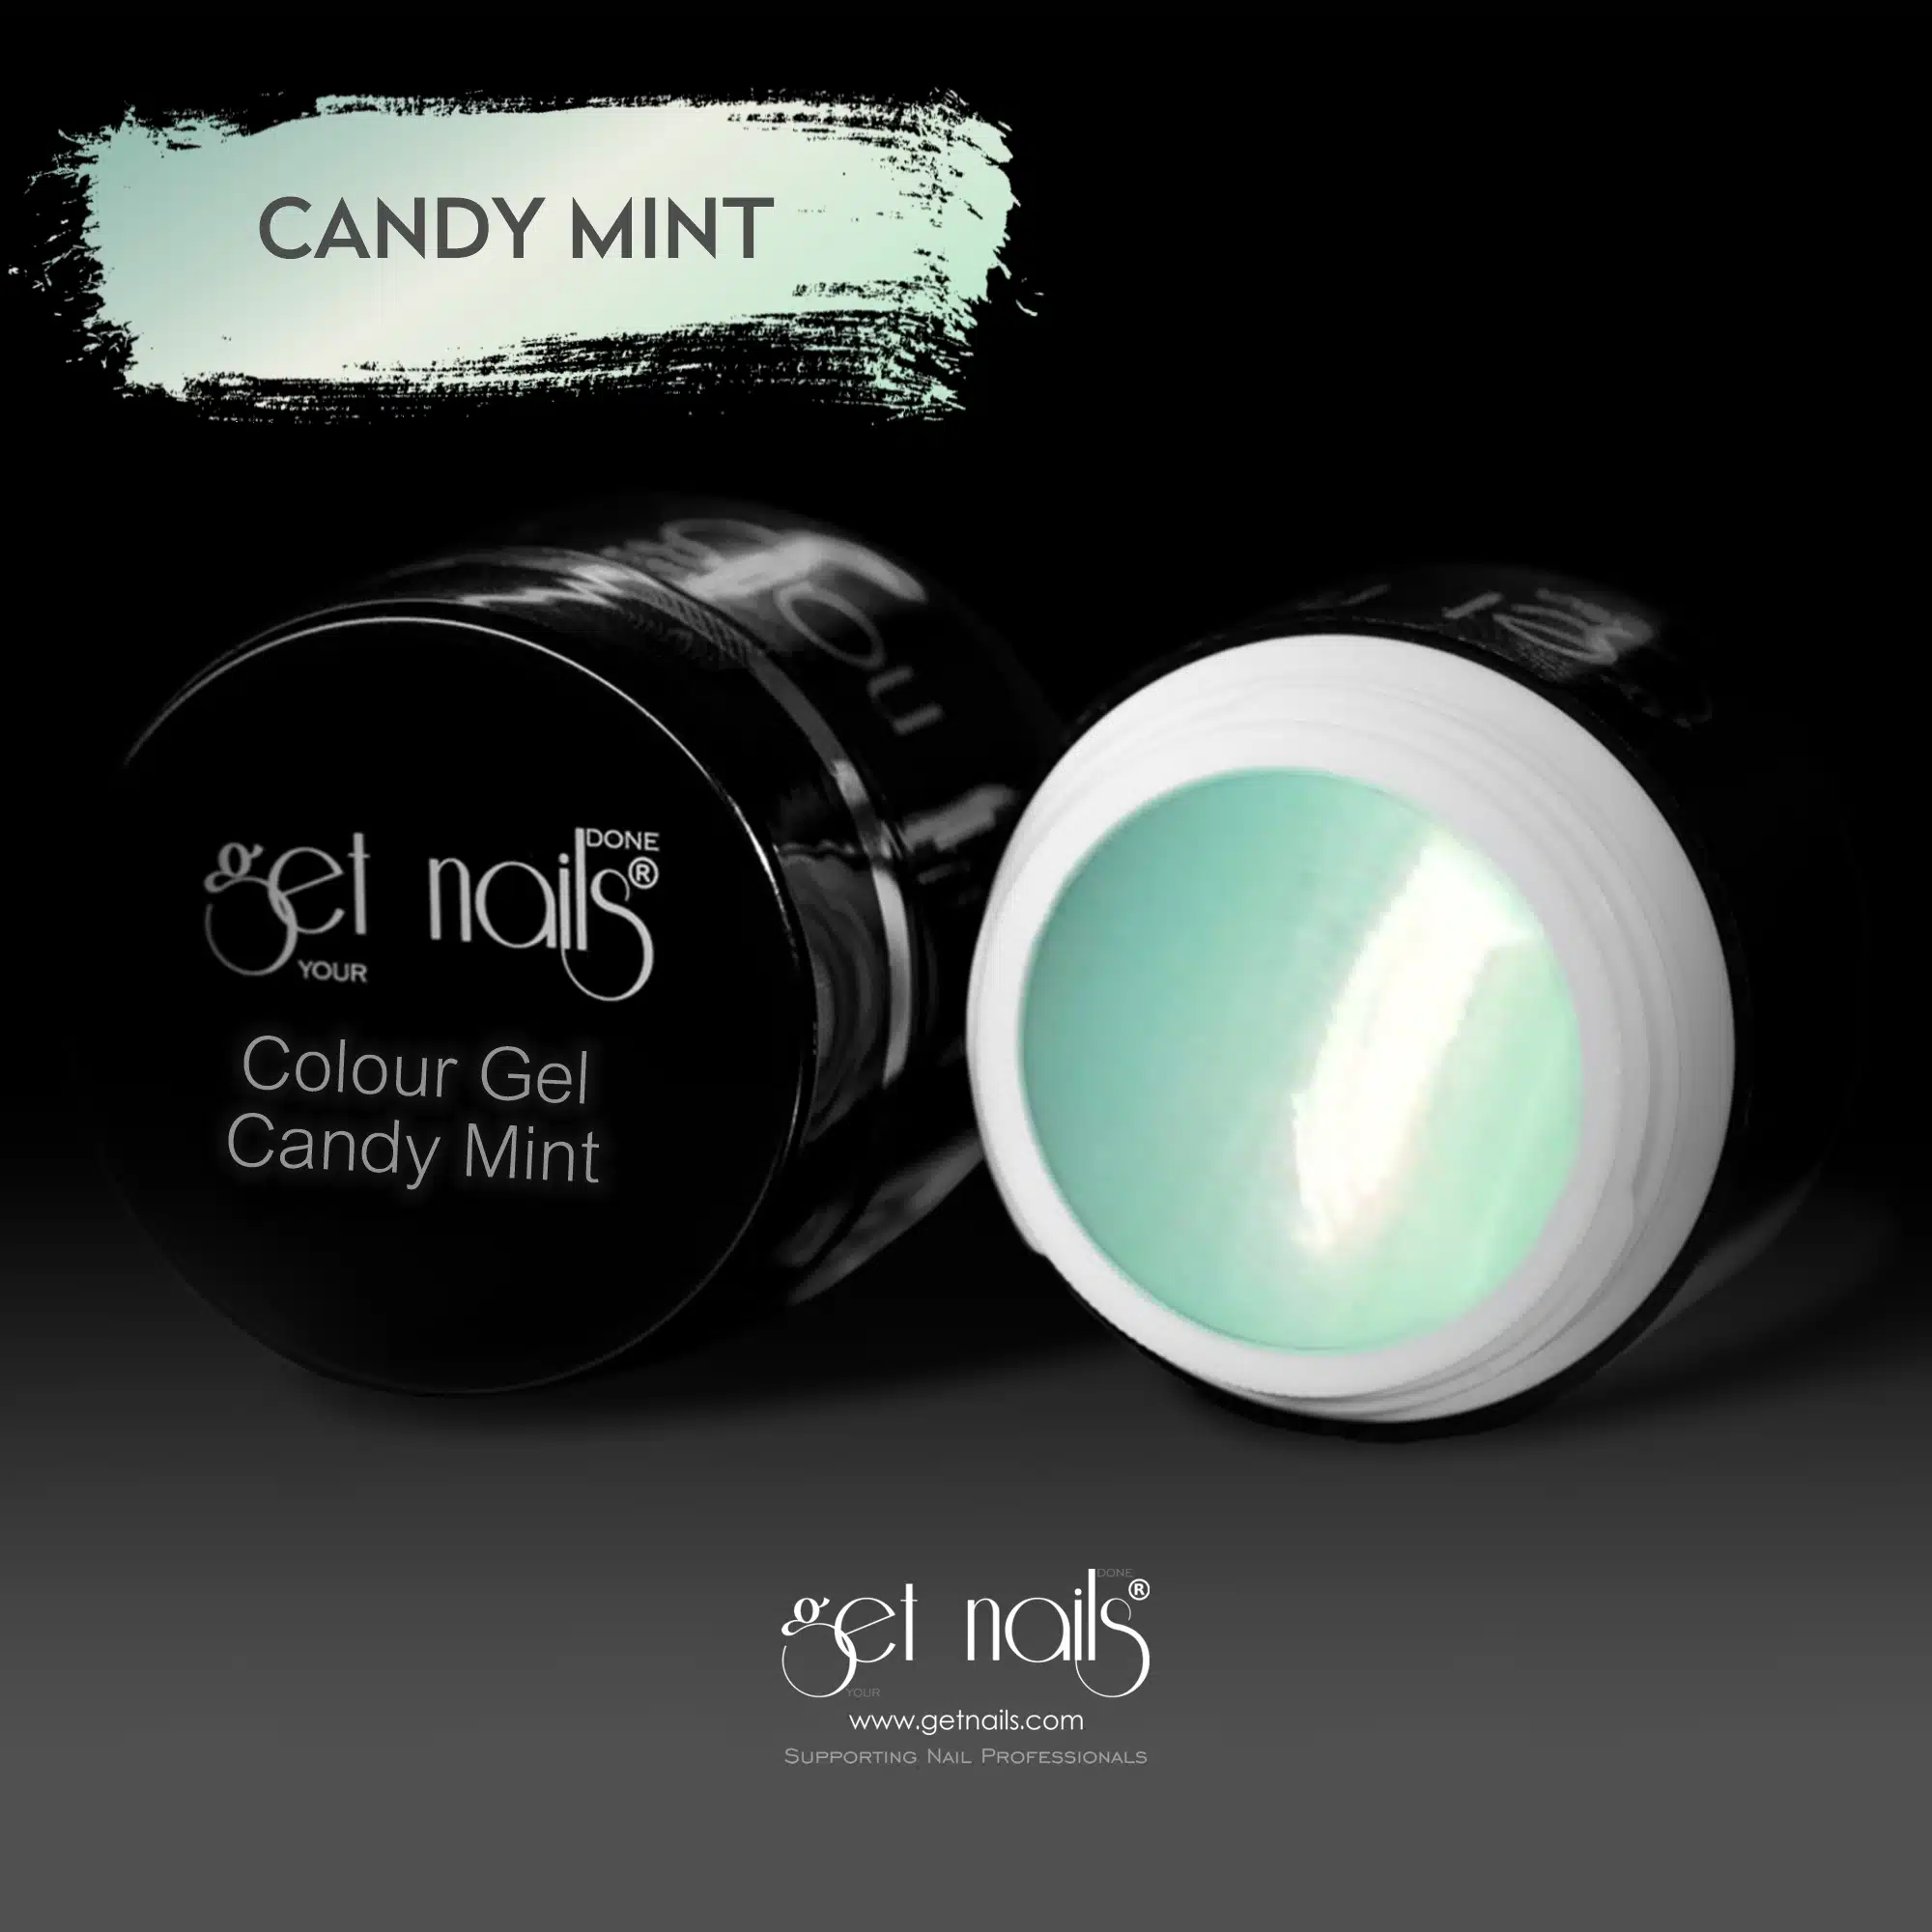 Get Nails Austria - Colour Gel Candy Mint 5g